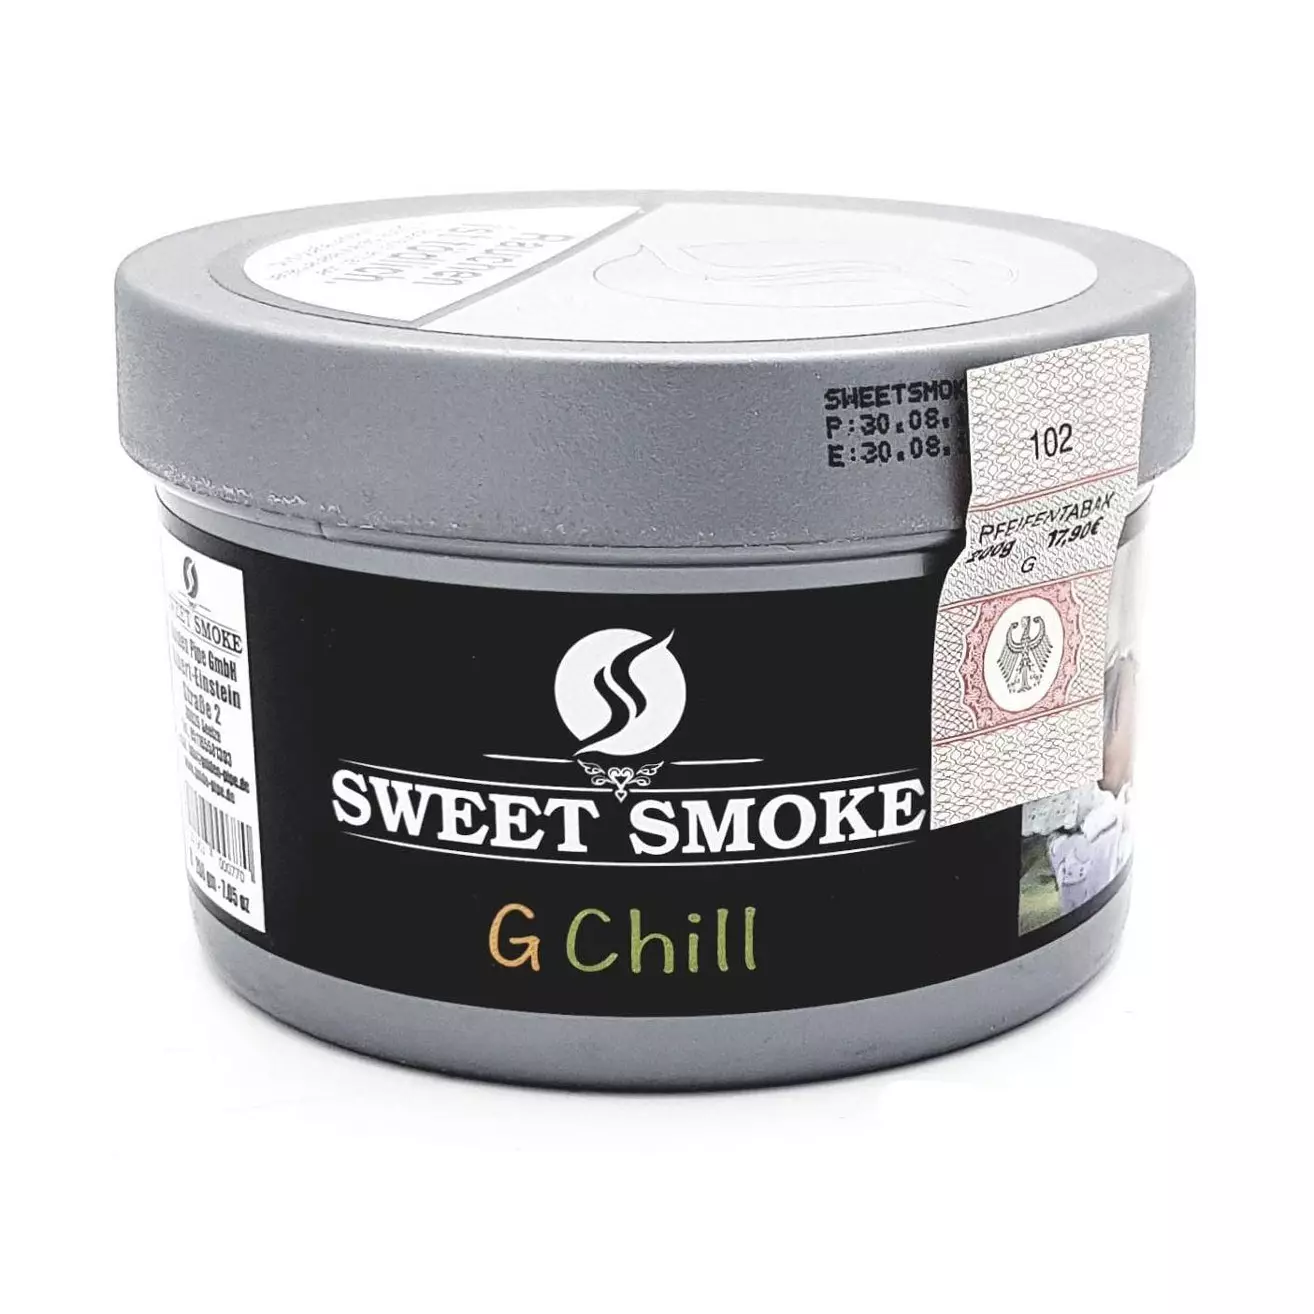 G Chill | Sweet Smoke